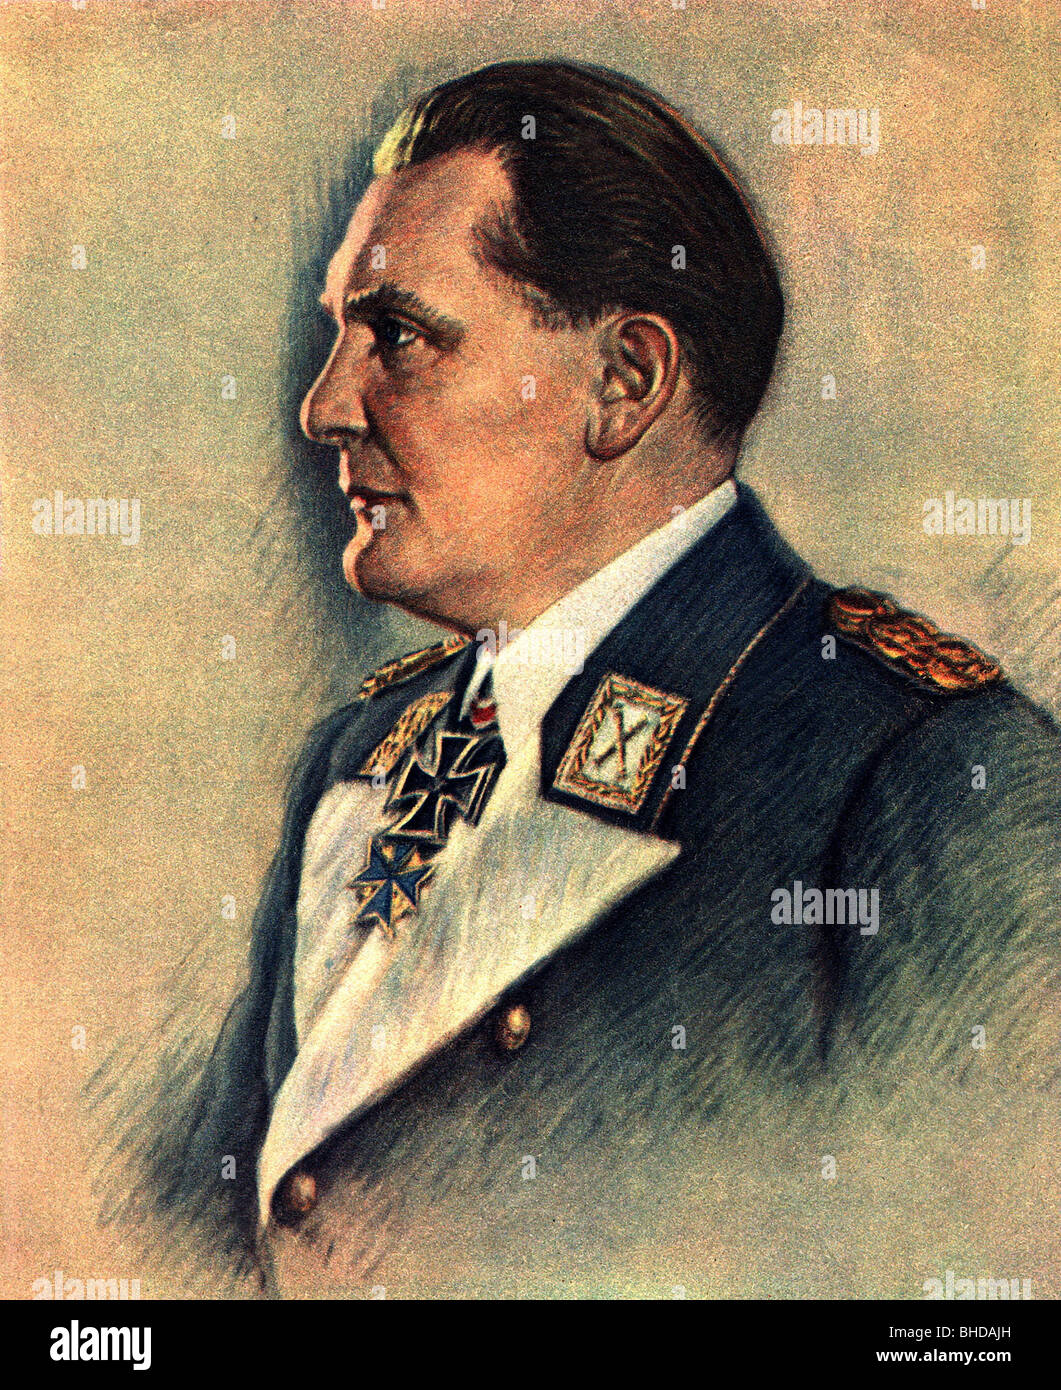 Goering, Hermann, 12.1.1893 - 15.10.1946, politicien allemand (NSDAP), commandant en chef de la Luftwaffe (force aérienne allemande) 1935 - 1945, portrait en uniforme, couleur imprimée après pastel par Kurt Koepernik, vers 1940, Banque D'Images